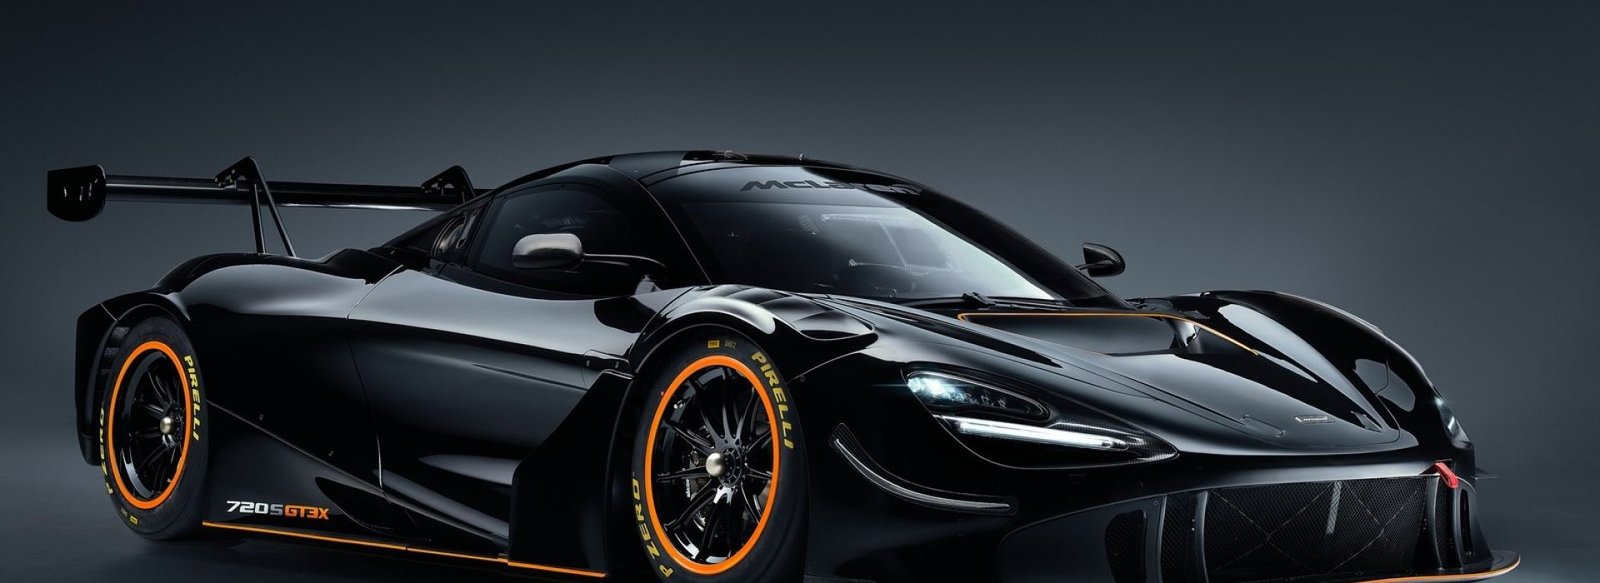 McLaren-720S_GT3X-2021-1600-01